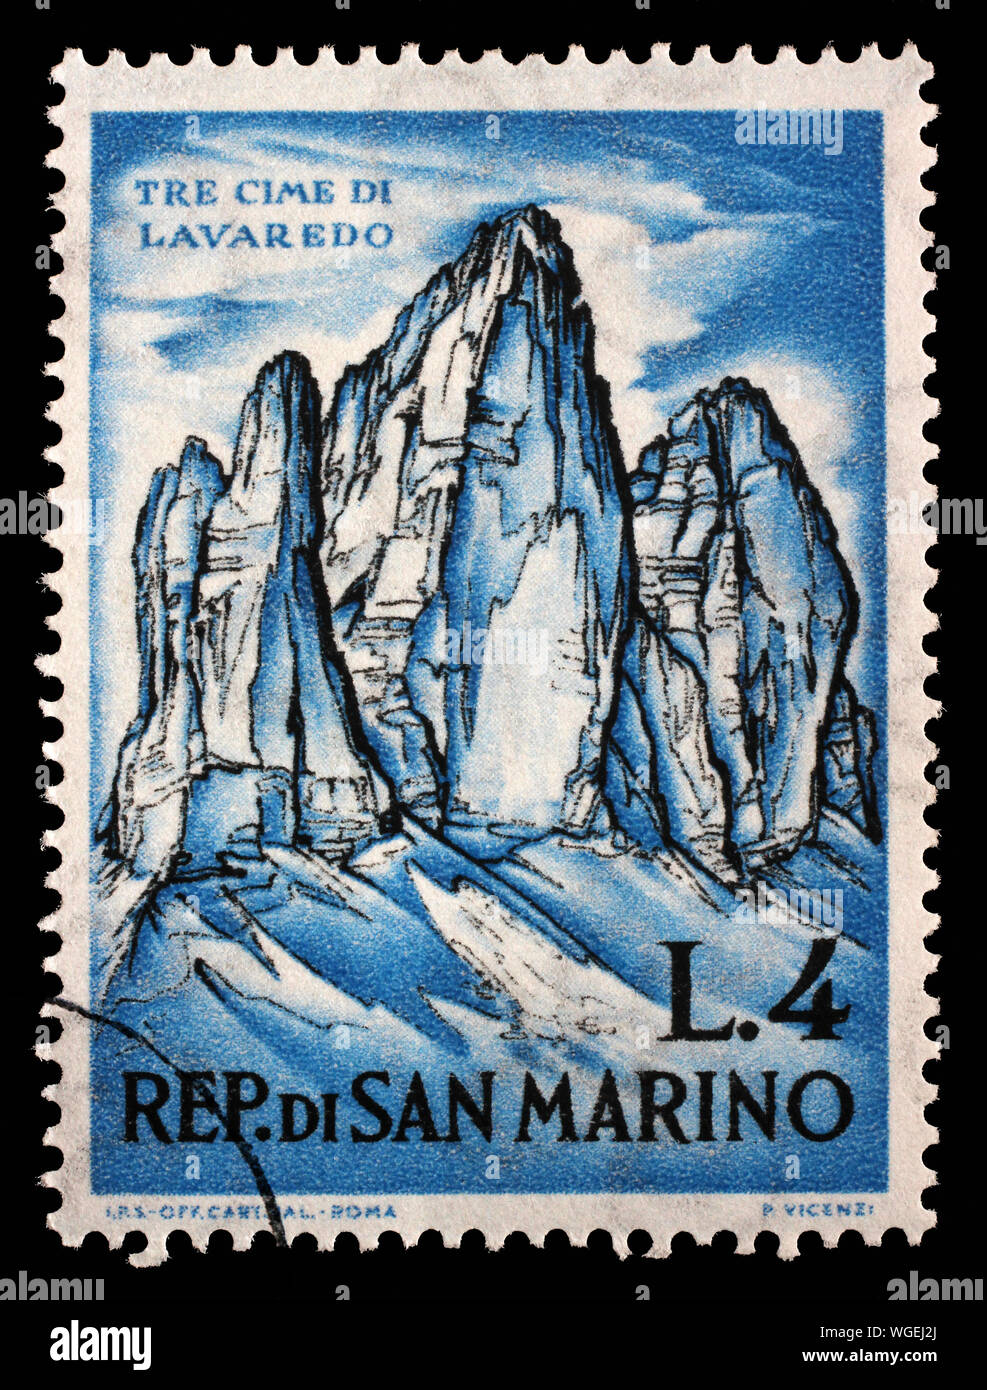 Stempel in San Marino ausgegebenen zeigt Tre Cime di Lavaredo und zum Bergsteigen gewidmet, circa 1962. Stockfoto